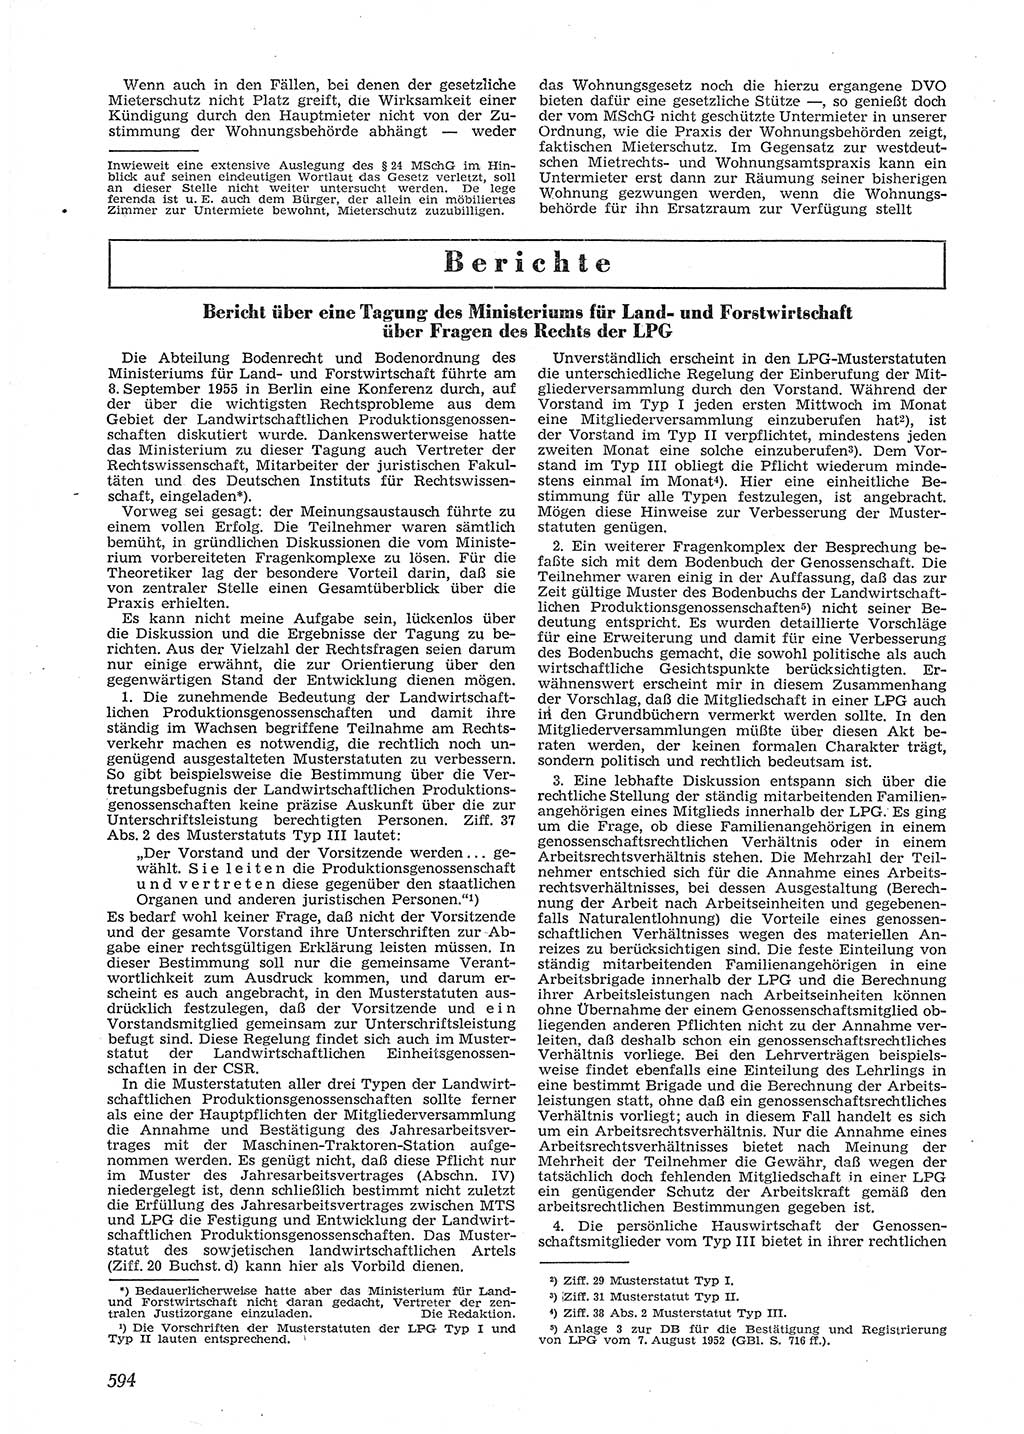 Neue Justiz (NJ), Zeitschrift für Recht und Rechtswissenschaft [Deutsche Demokratische Republik (DDR)], 9. Jahrgang 1955, Seite 594 (NJ DDR 1955, S. 594)